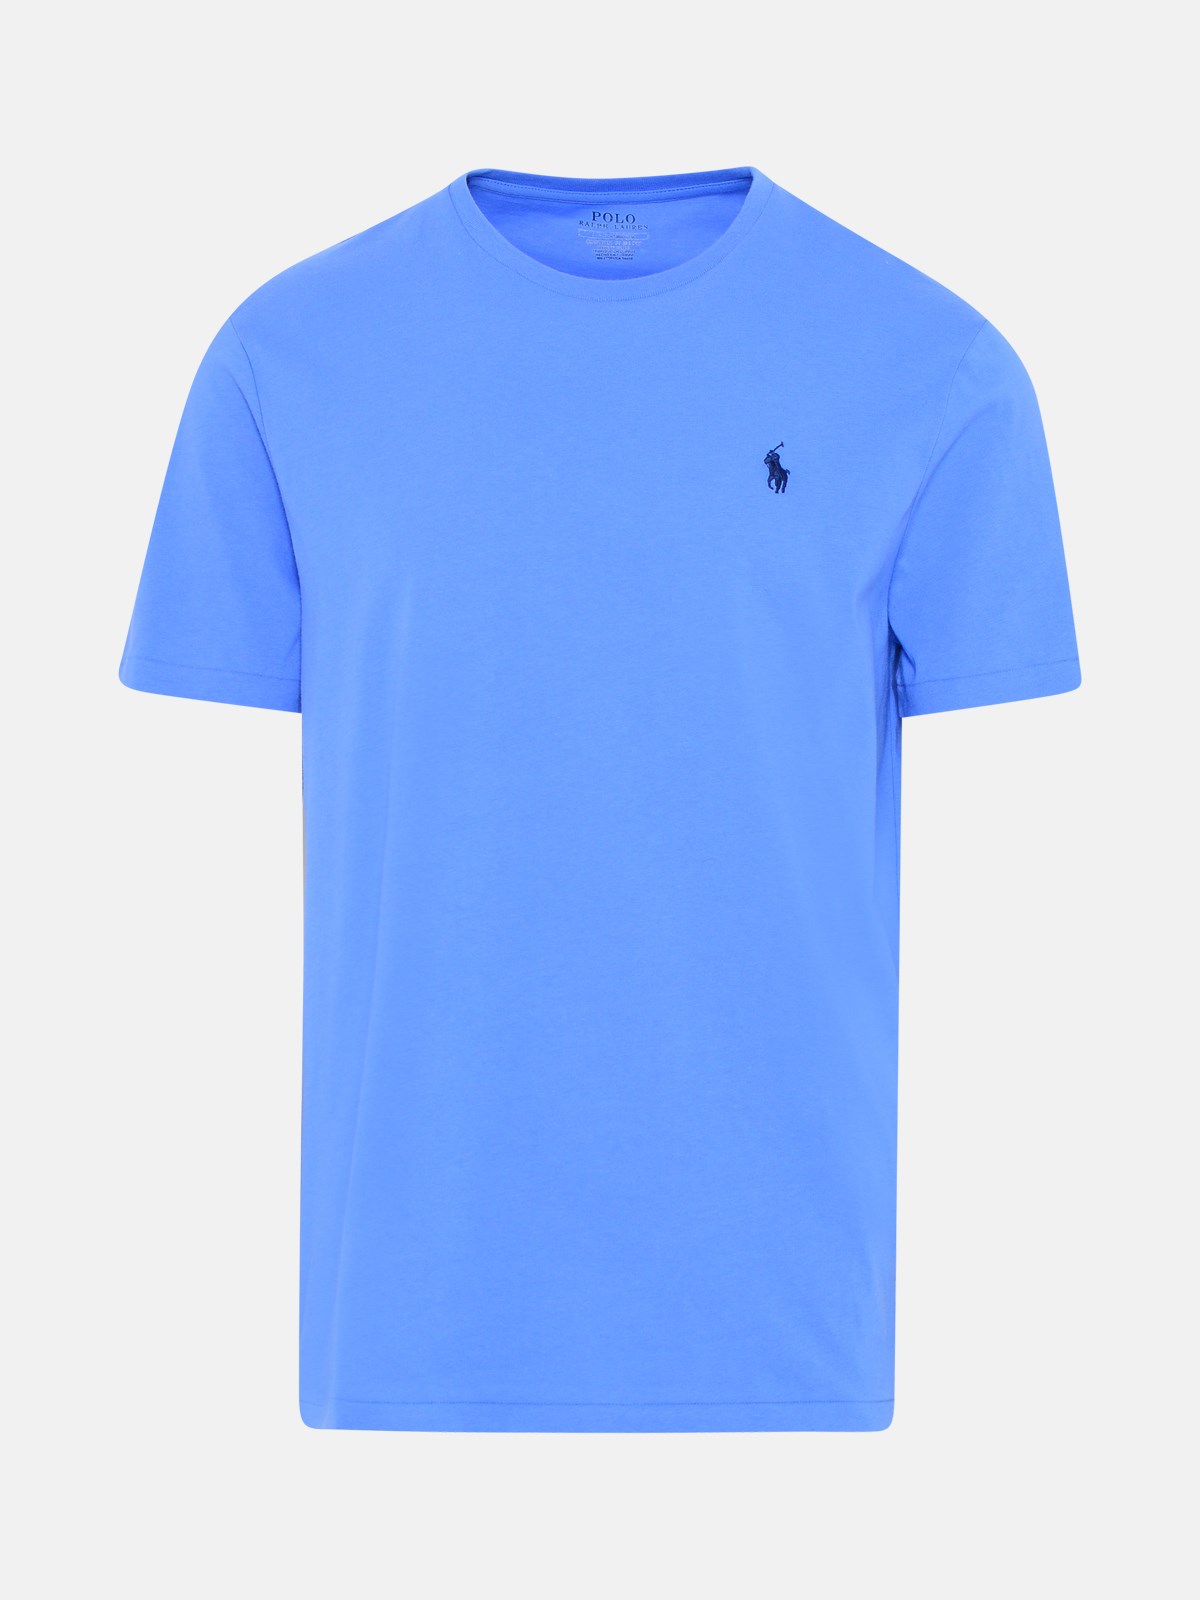 랄프로렌 남성 라이트 블루 코튼 티셔츠